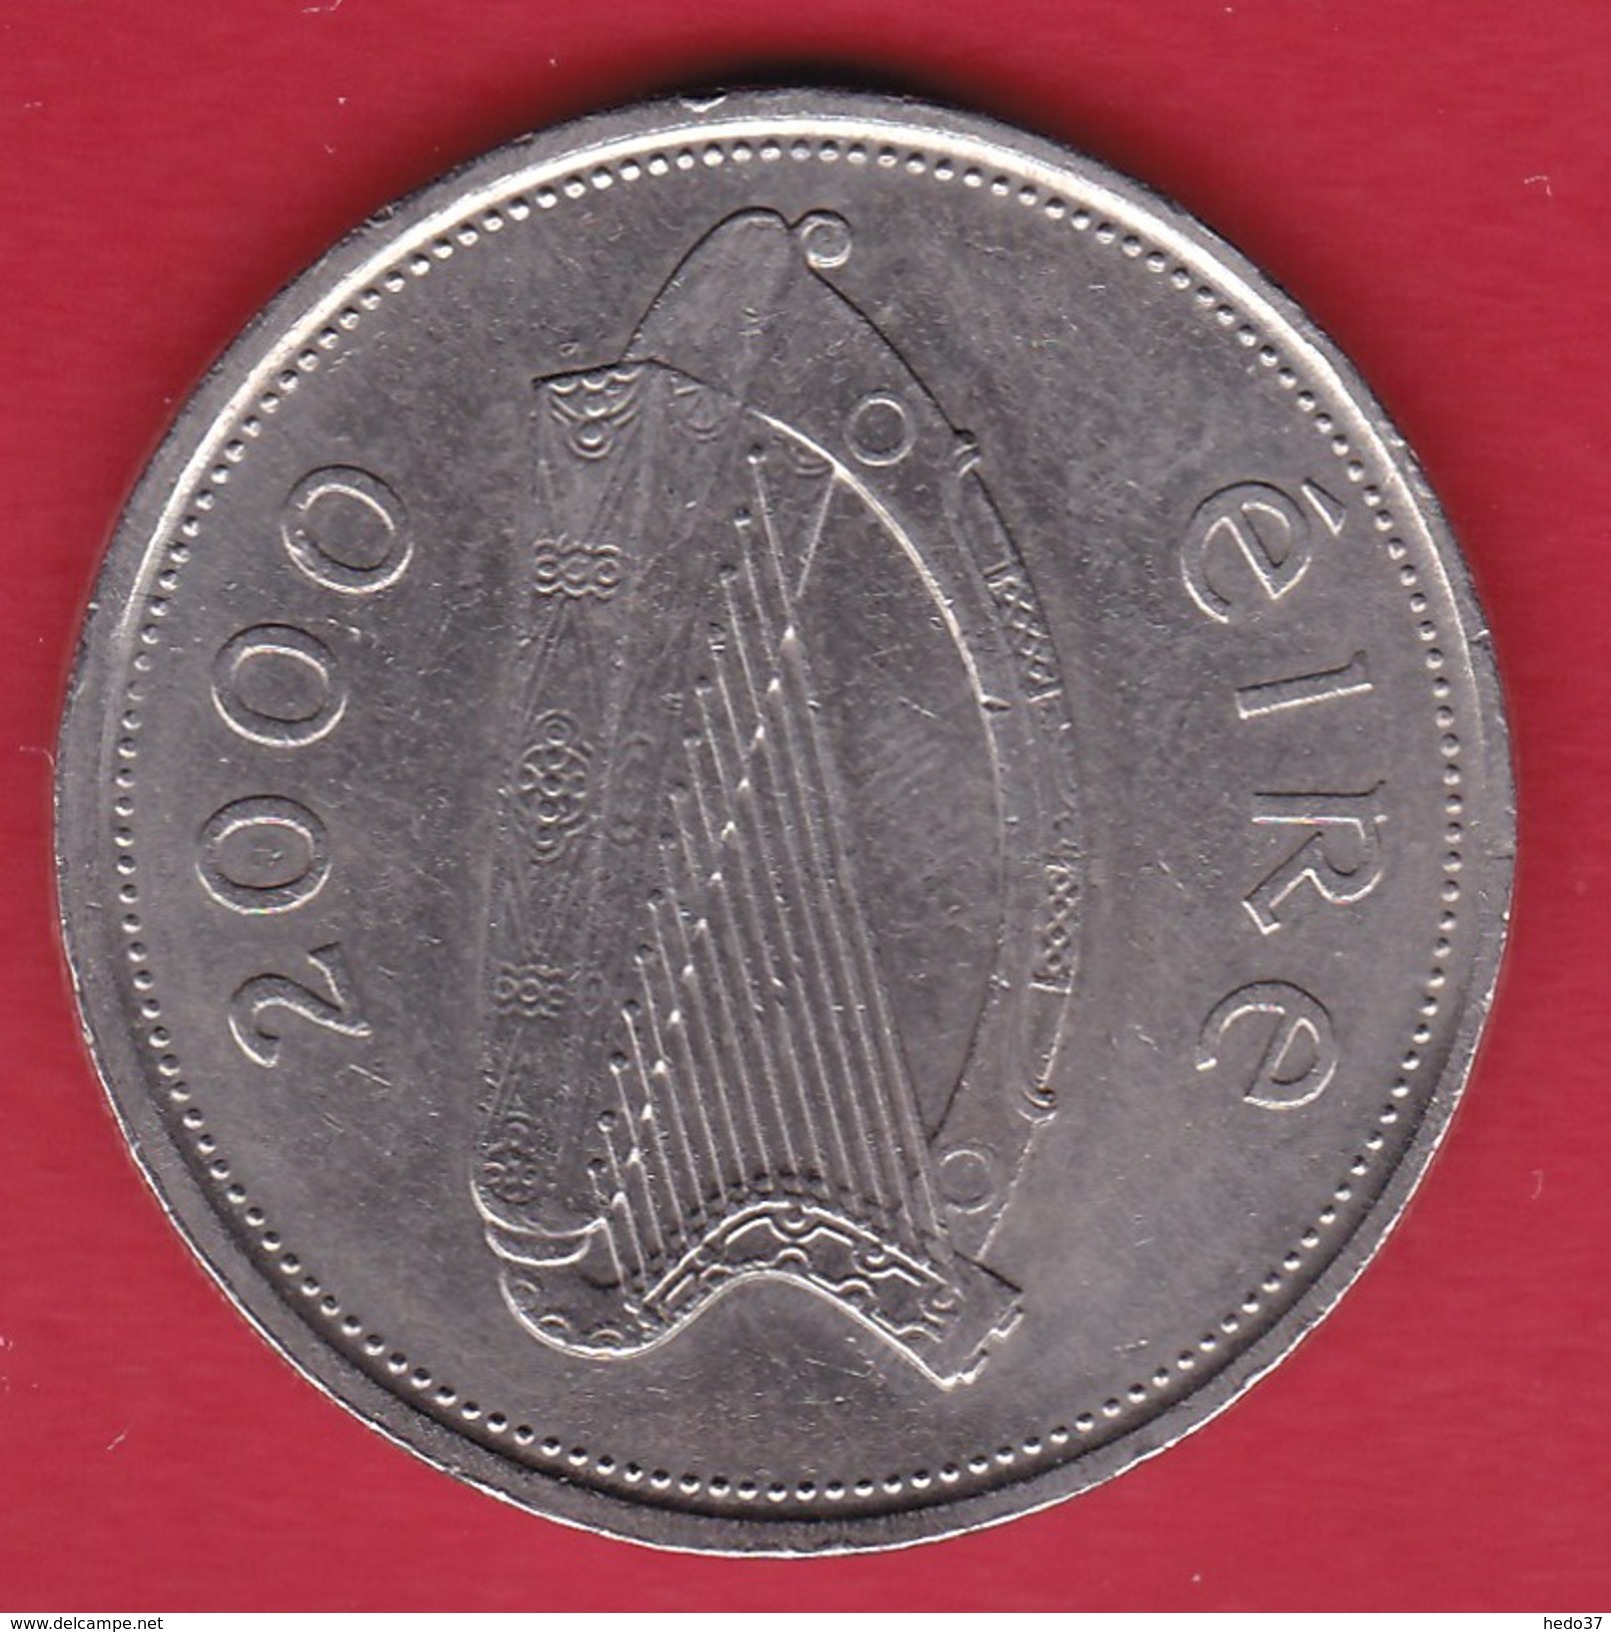 Irlande - 1 £ 2000 - Irlande